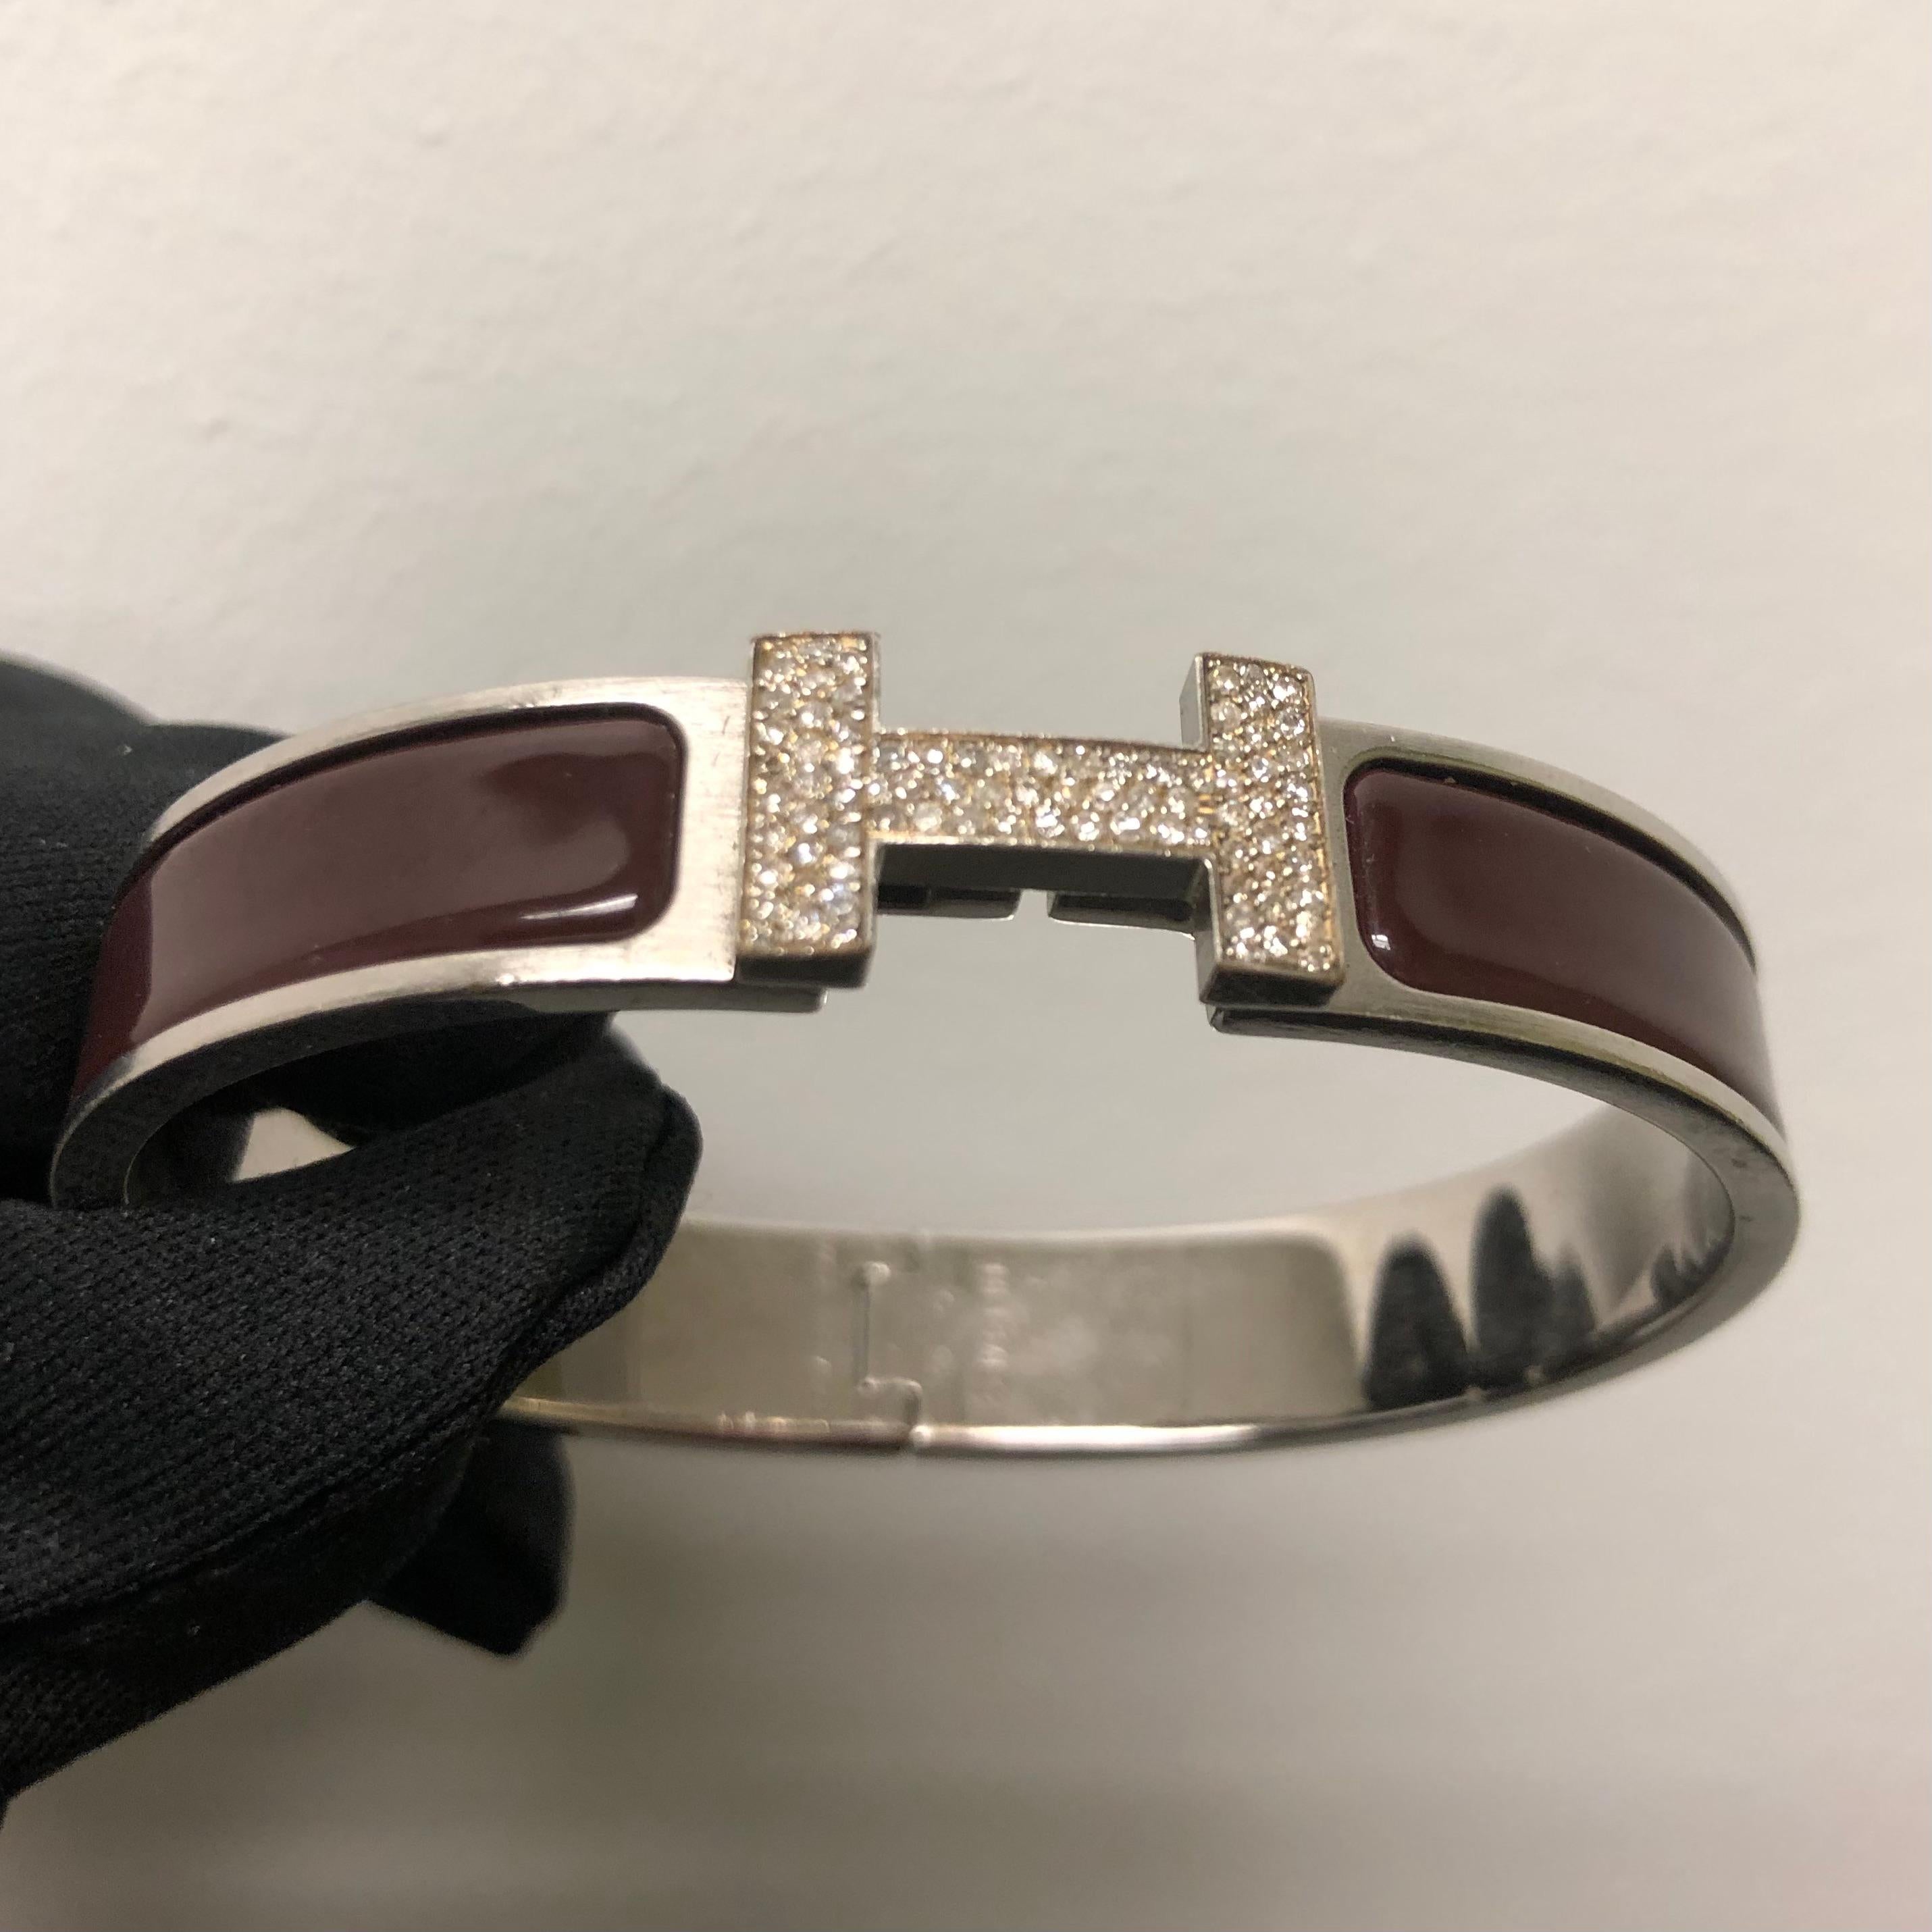 Custom Diamond Hermes Clic H Armband komplett mit Originalverpackung.

Ein Original Hermes Clic H Armband GM Größe in Braun und Silber Farbe ist individuell von Hand mit ca. 1,25 Karat von natürlichen echten Erde abgebaut SI-I Diamanten gesetzt. Die